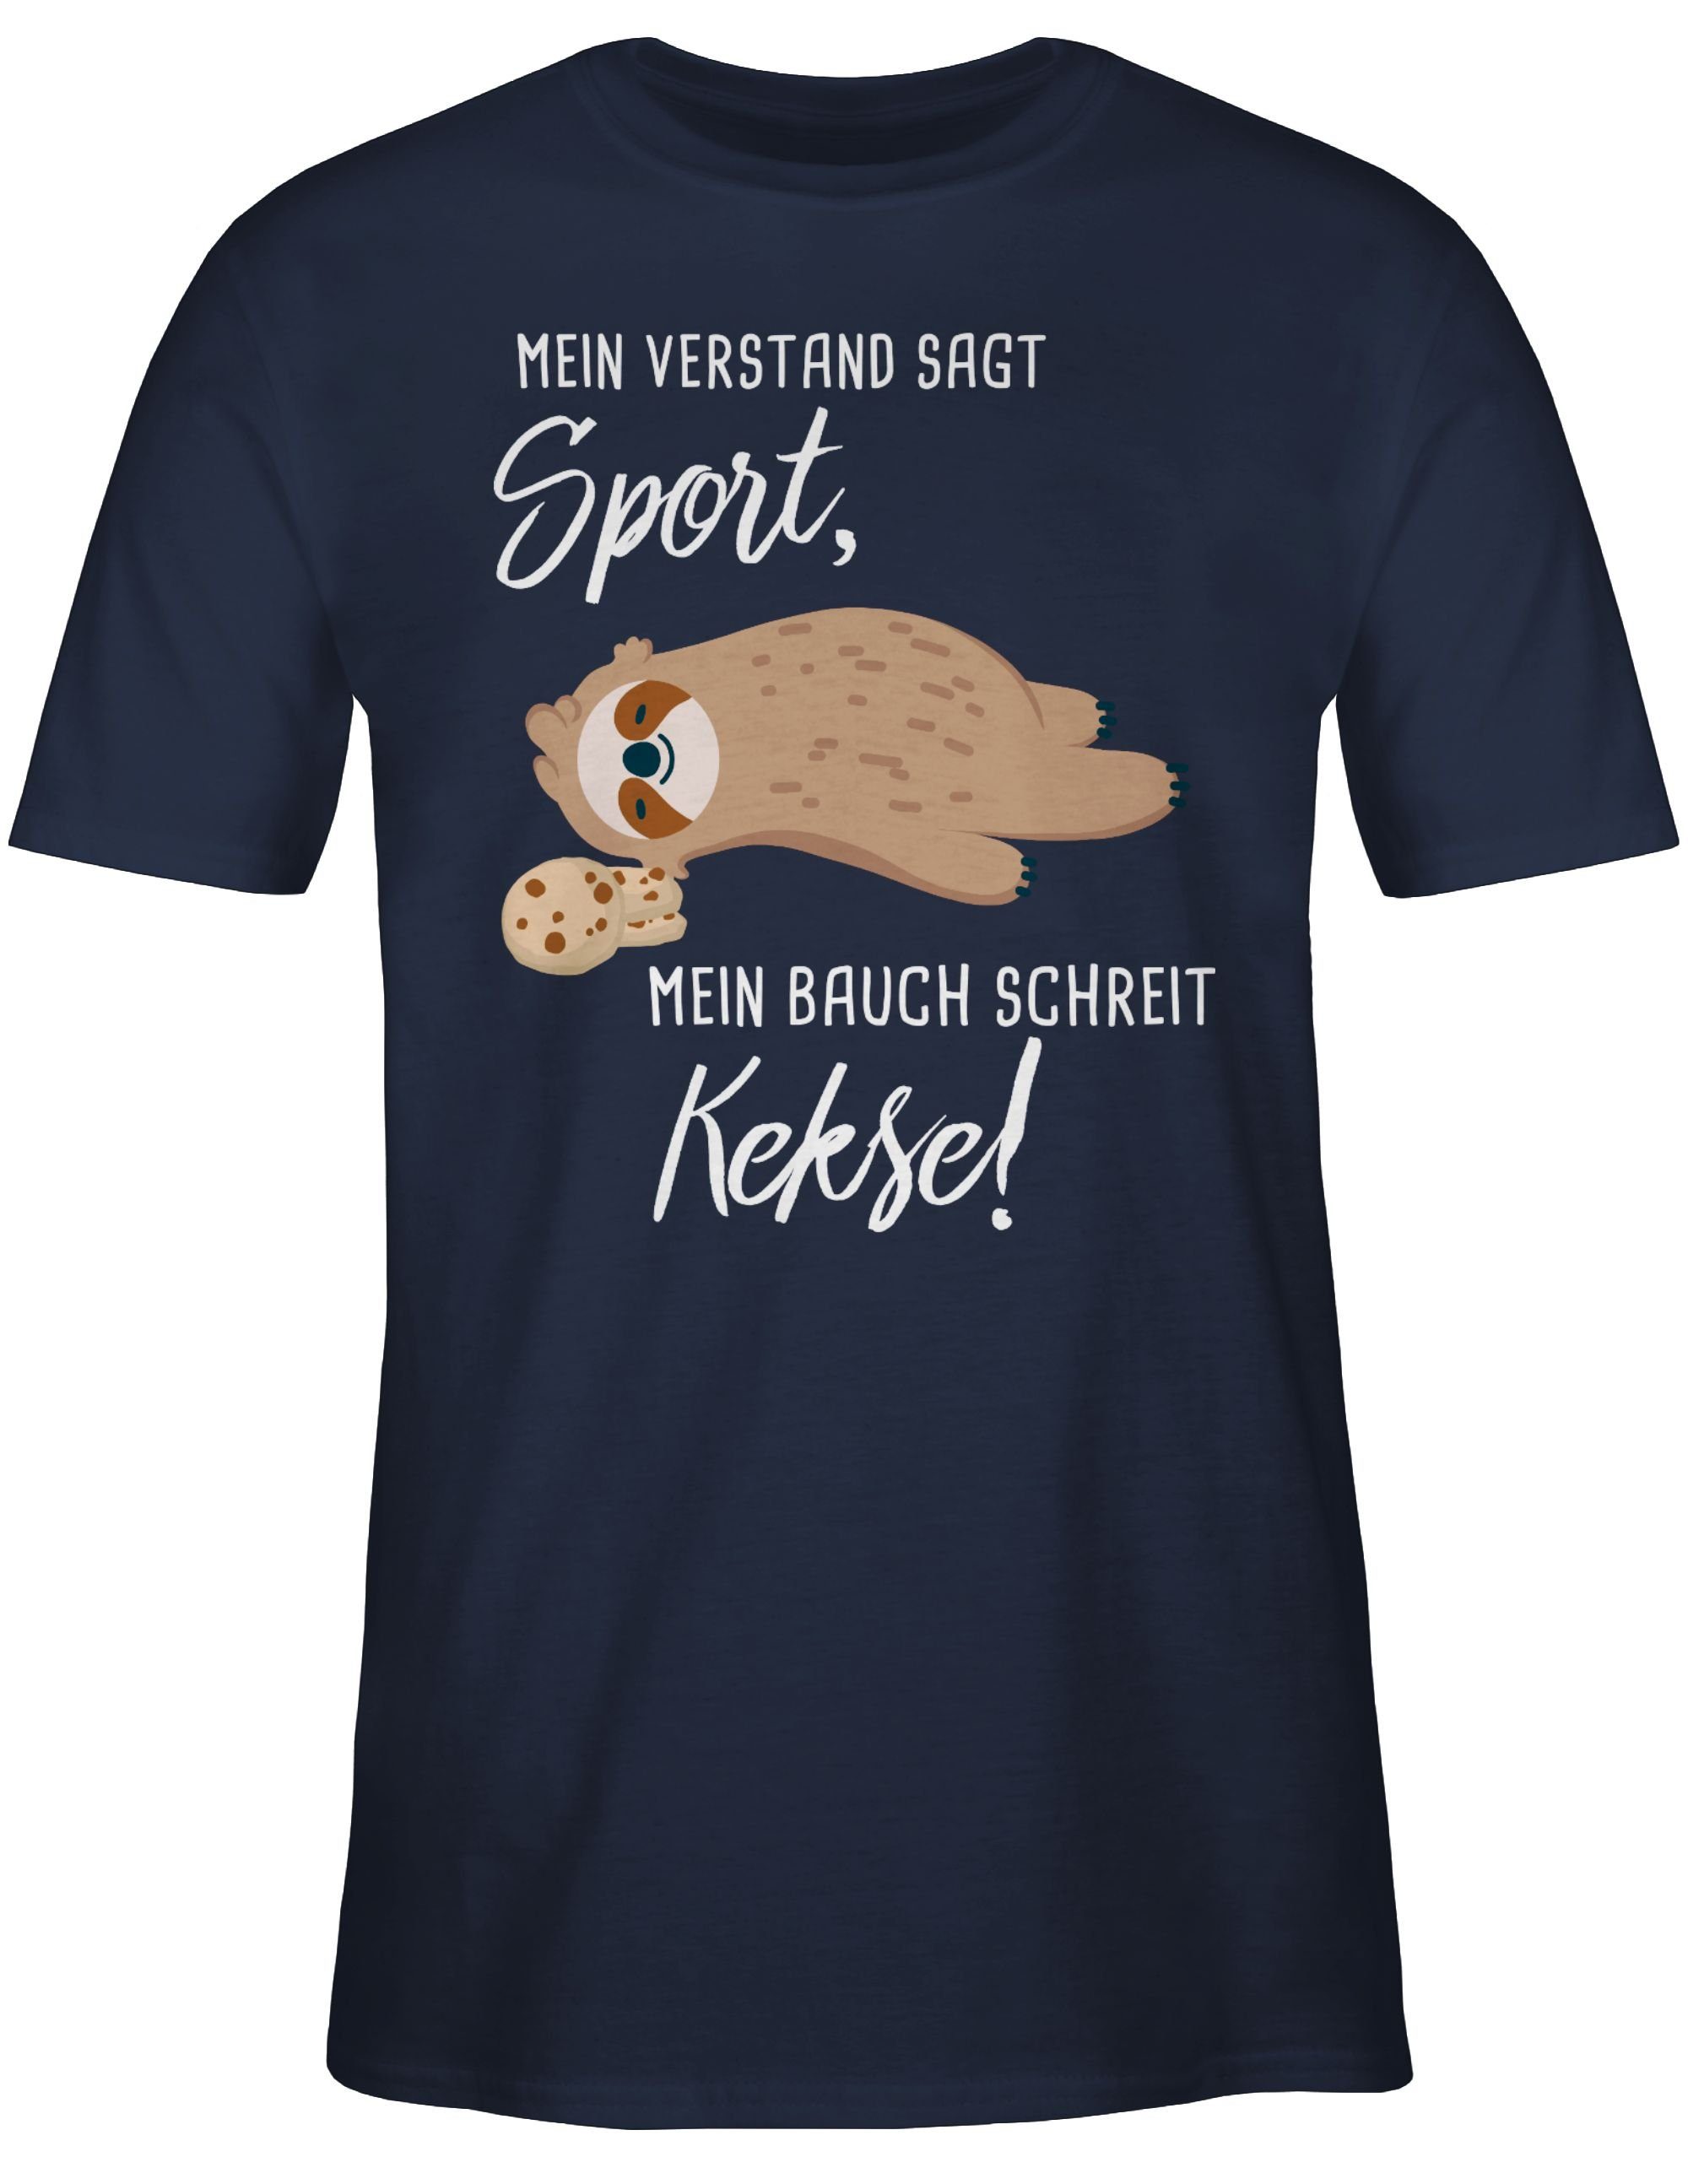 Kekse! schreit Statement Mein T-Shirt Sprüche Bauch Shirtracer 02 Faultier Blau Navy